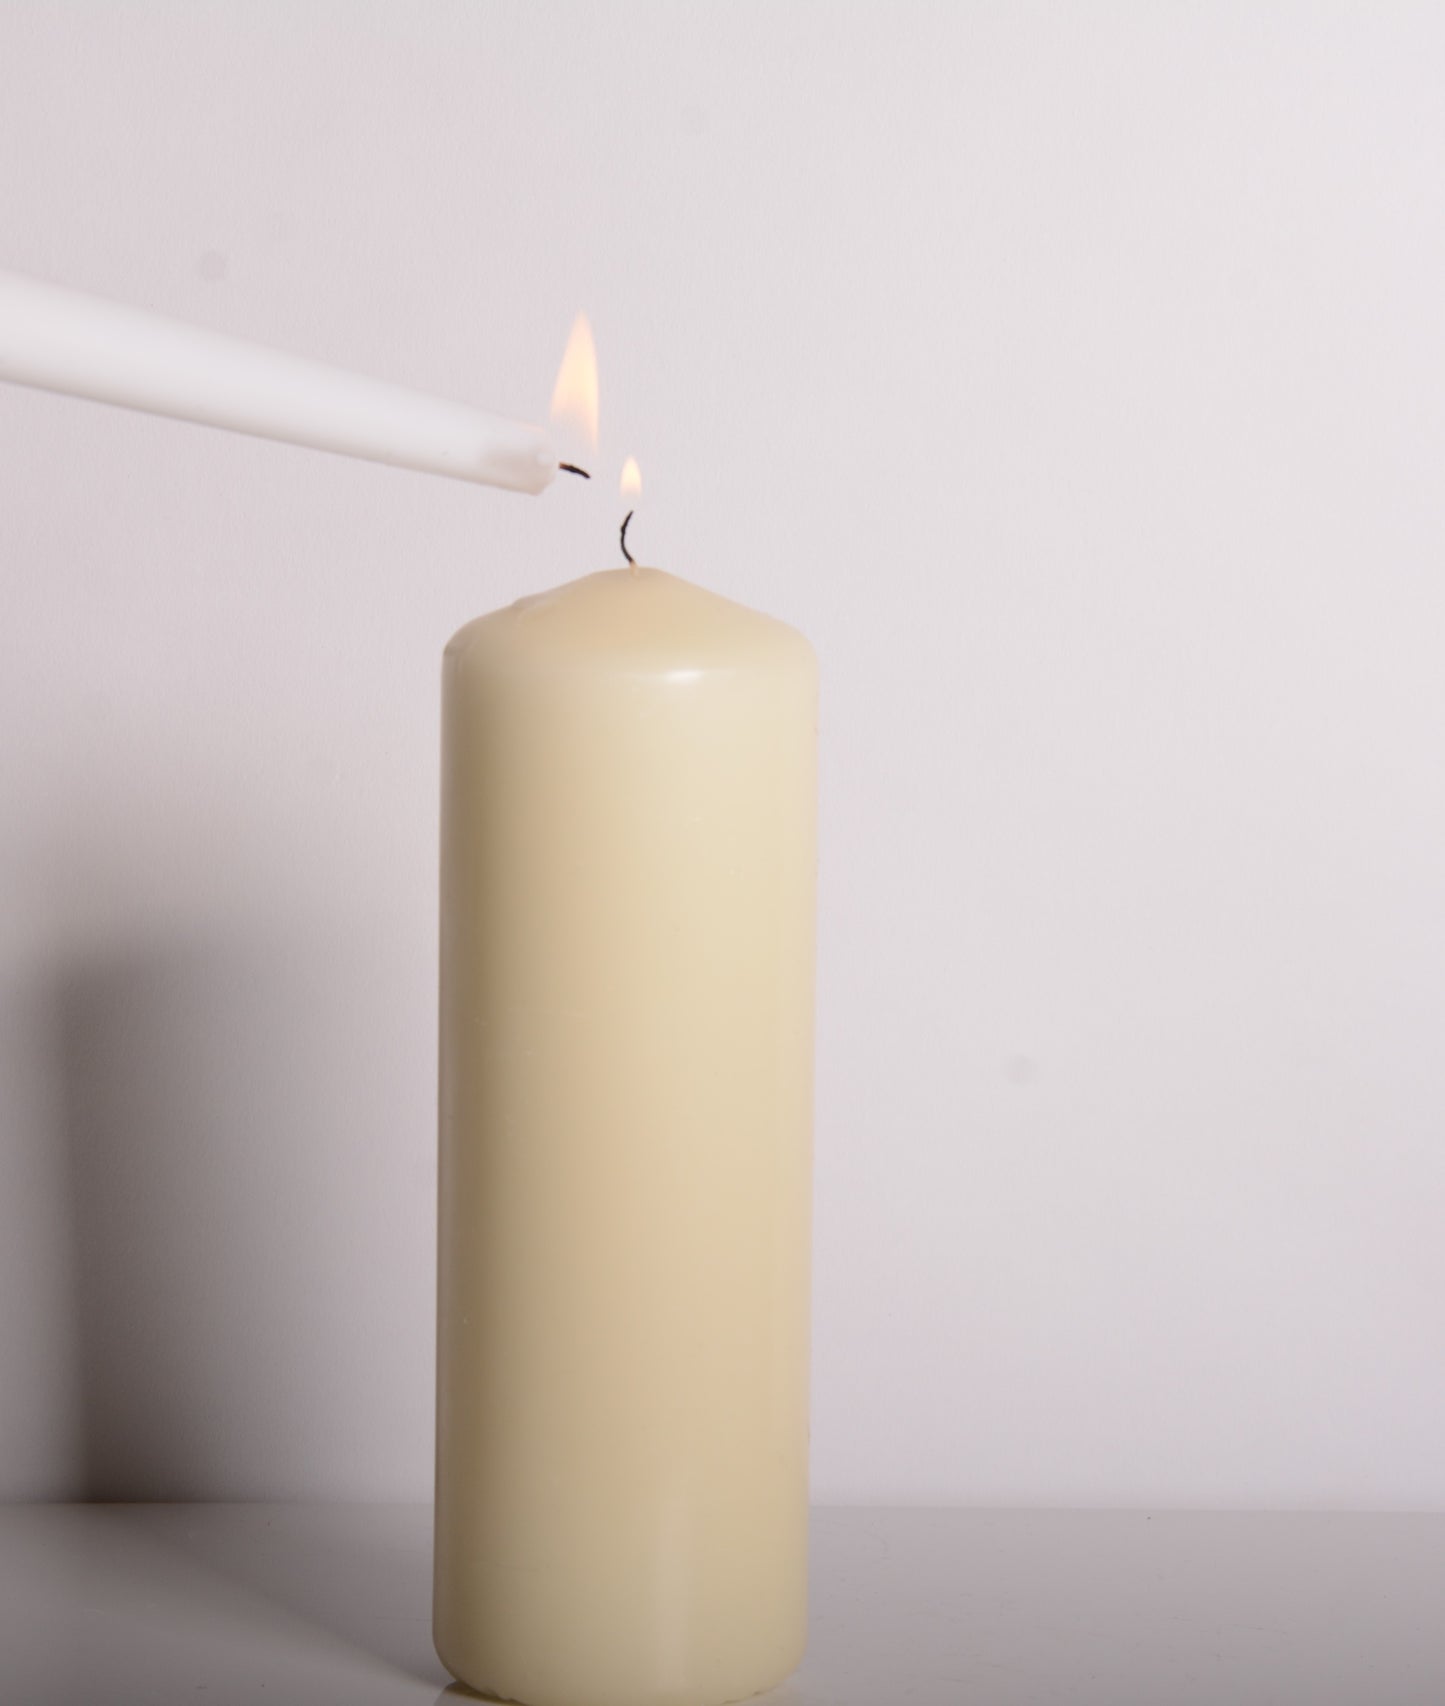 Tutu Pele Candle in Ivory